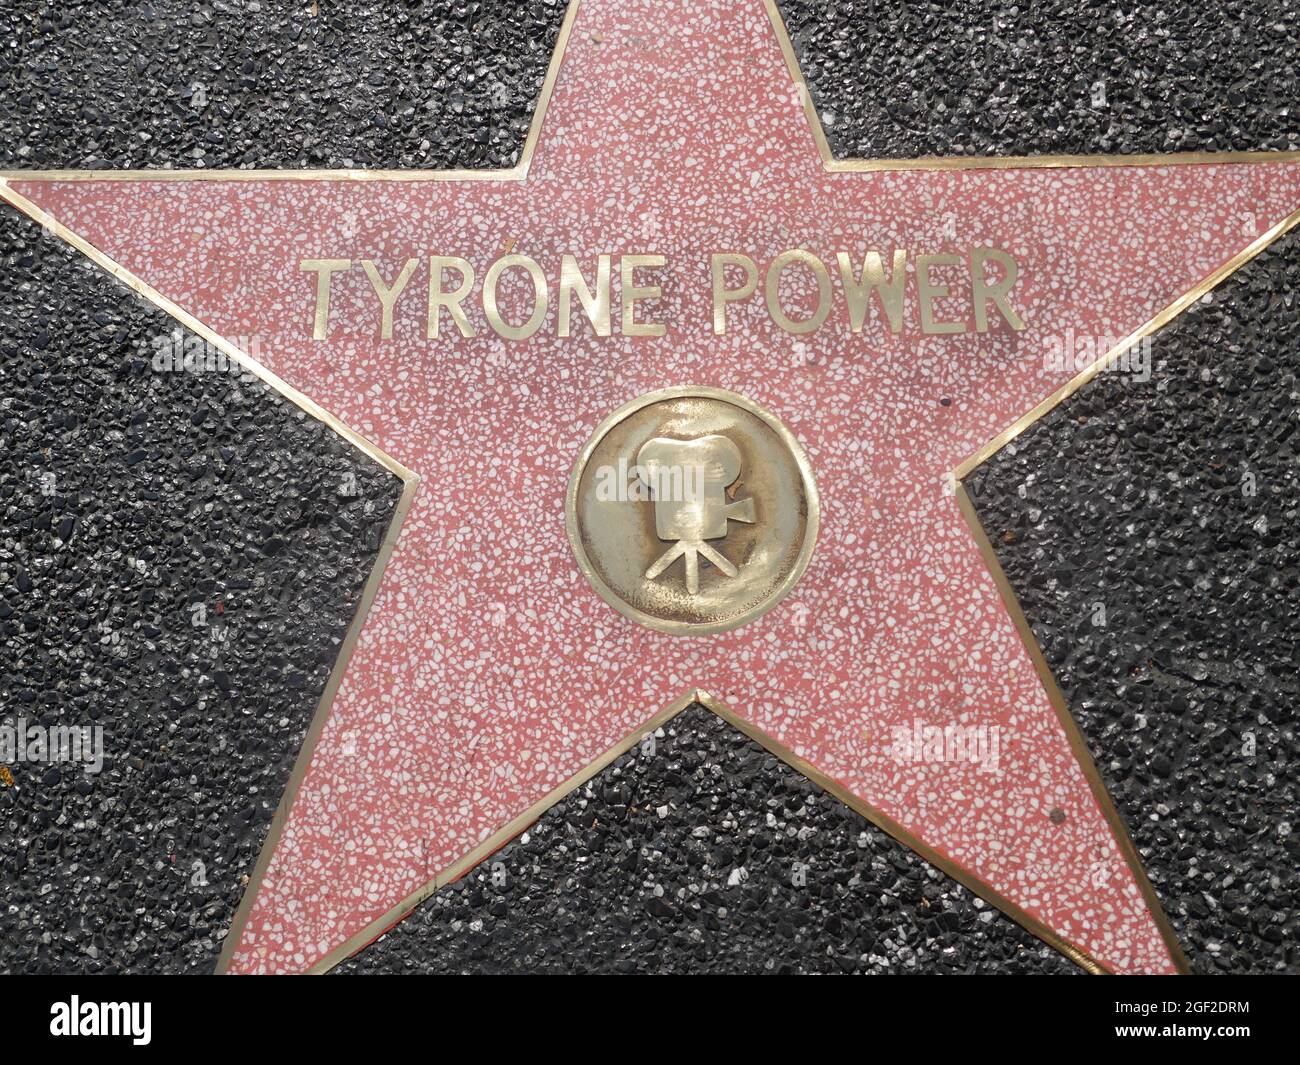 Hollywood, California, USA 17 agosto 2021 una visione generale dell'atmosfera dell'attore Tyrone Power's New Star sulla Hollywood Walk of Fame il 17 agosto 2021 a Hollywood, California, USA. Foto di Barry King/Alamy Stock Foto Foto Stock